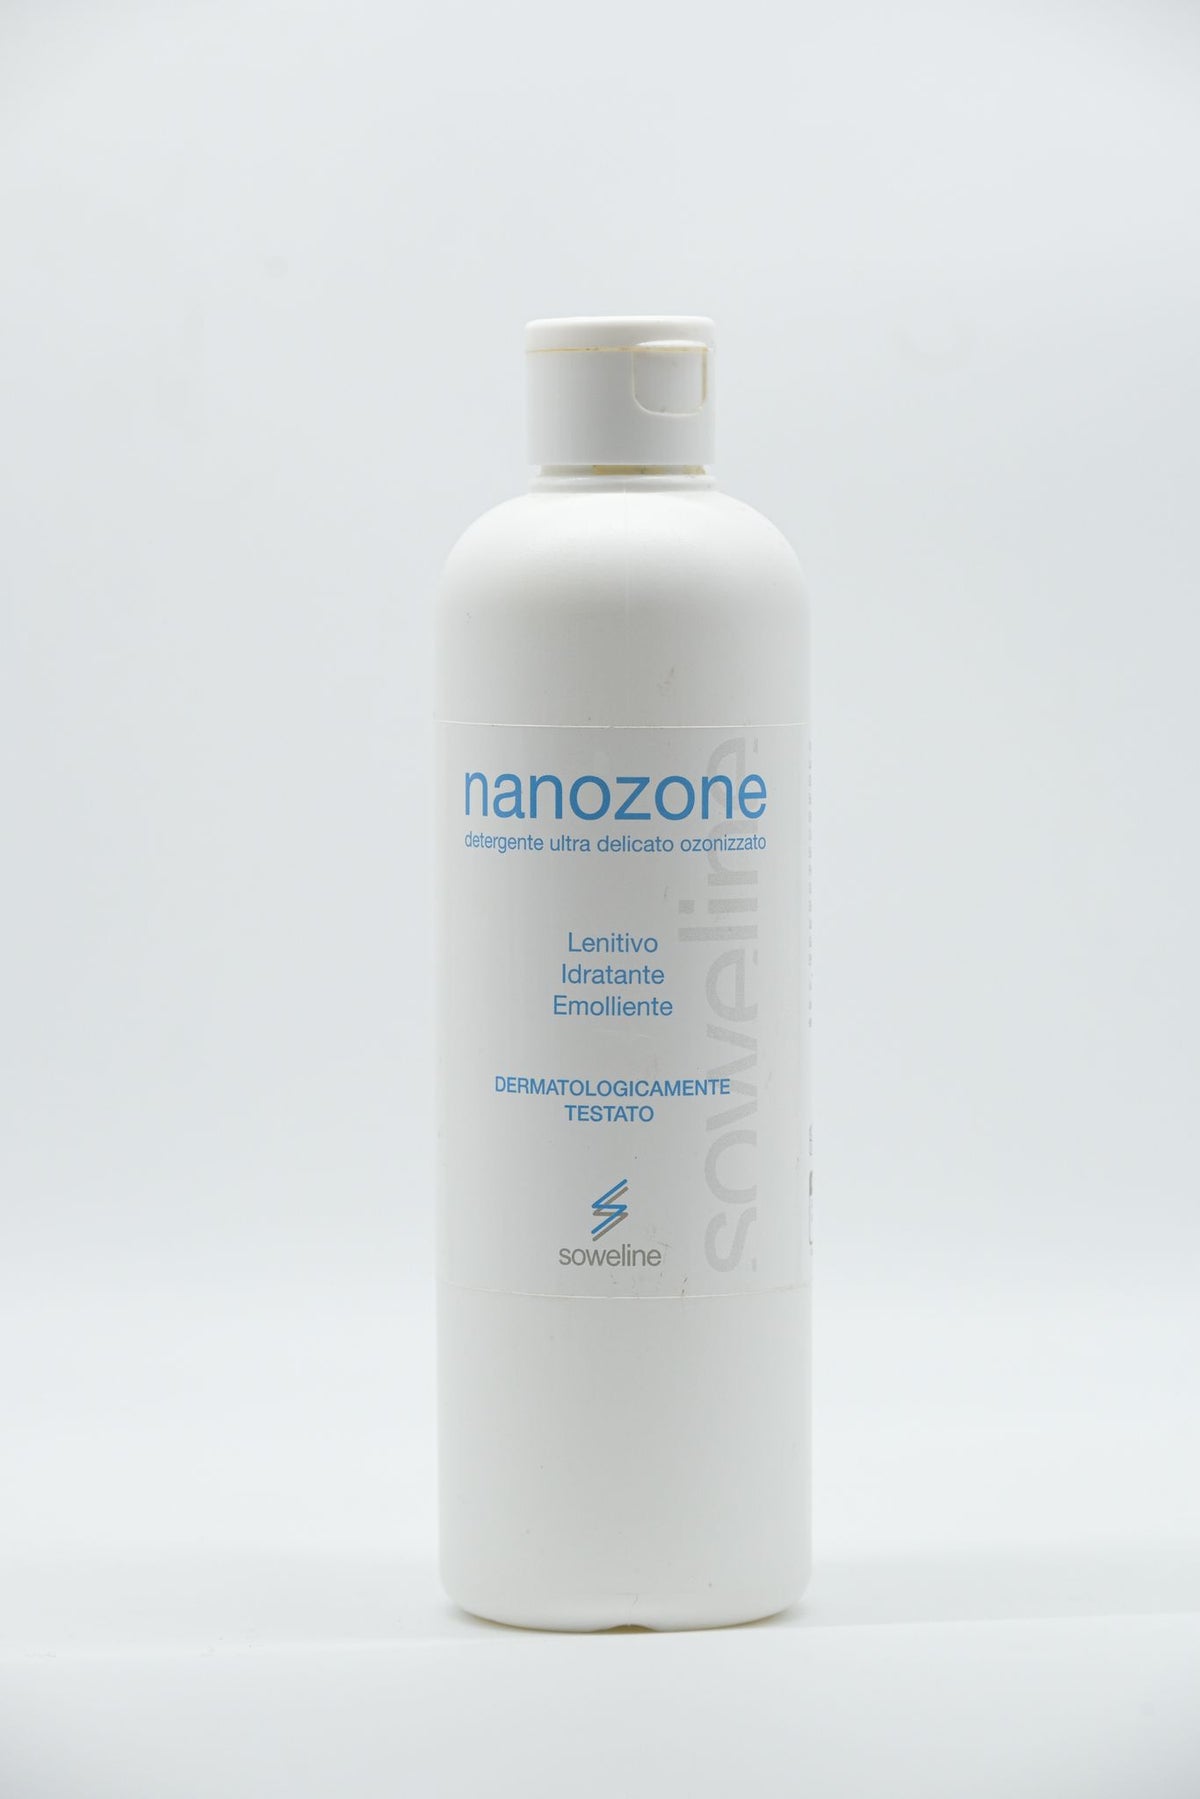 Nanozone